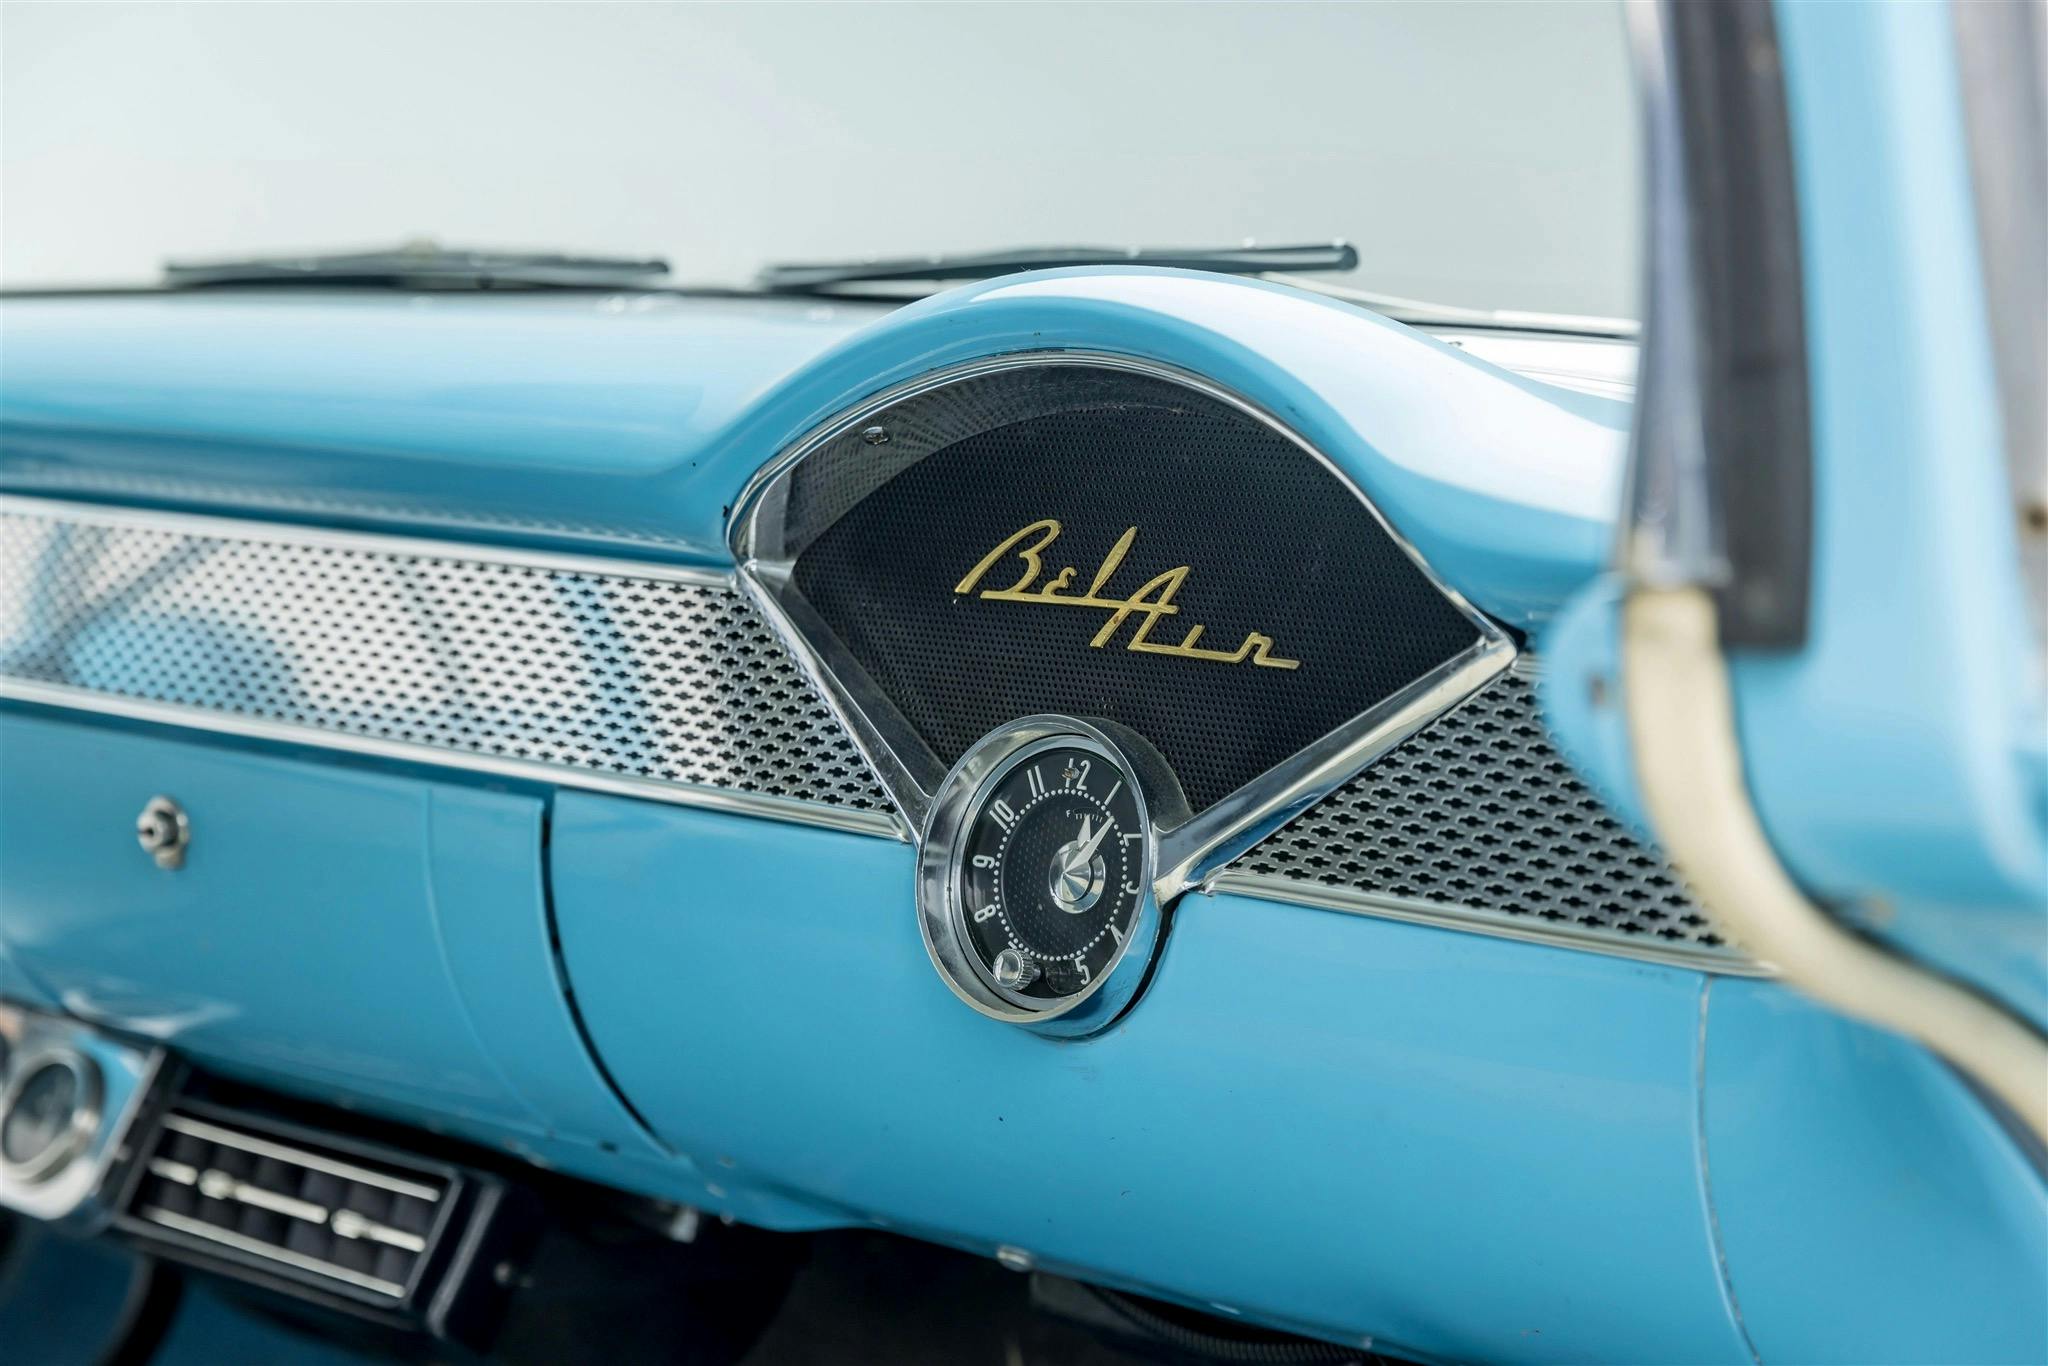 Bruce Willis 1955 Chevrolet Bel Air Nomad interior dash clock